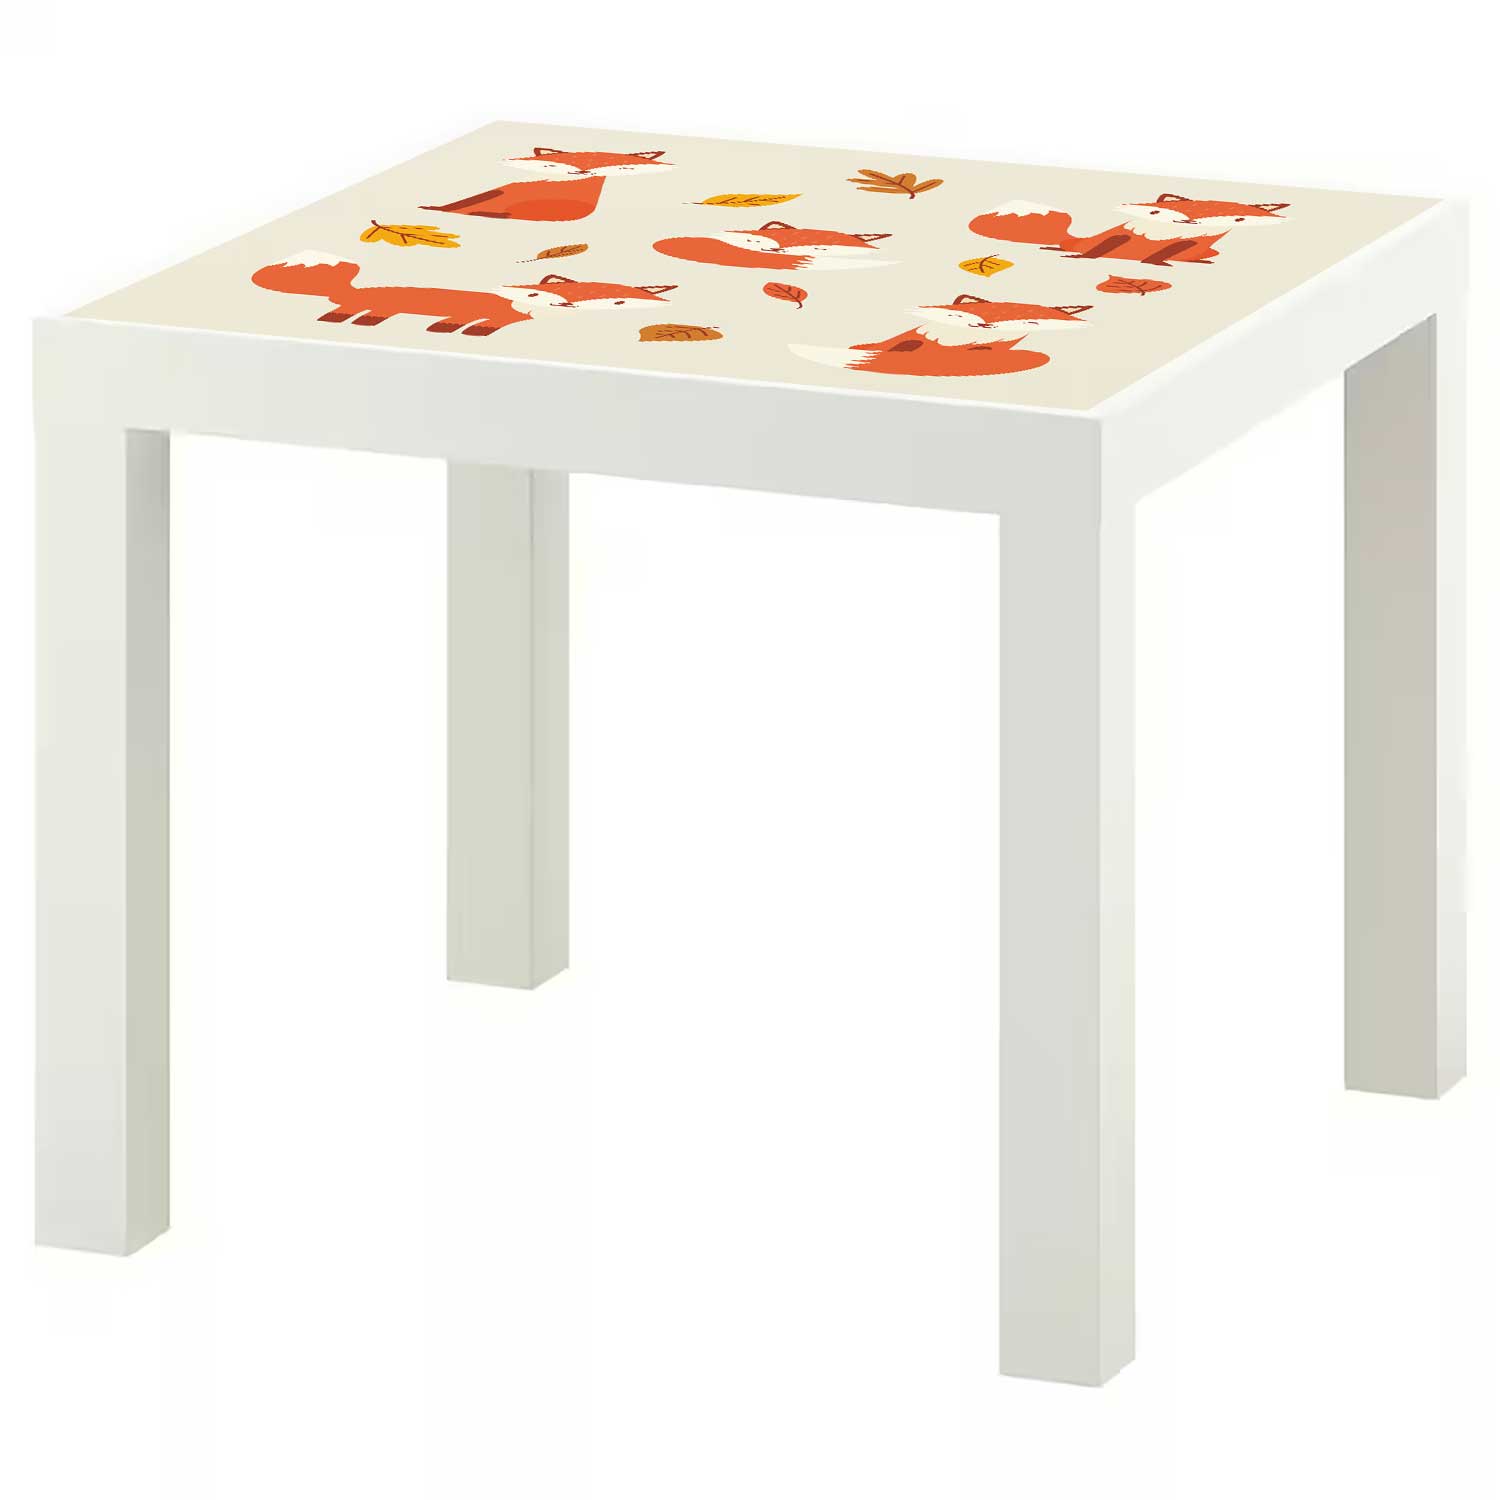 Möbelfolie für IKEA Lack Tisch 55x55 cm 'Fuchs'